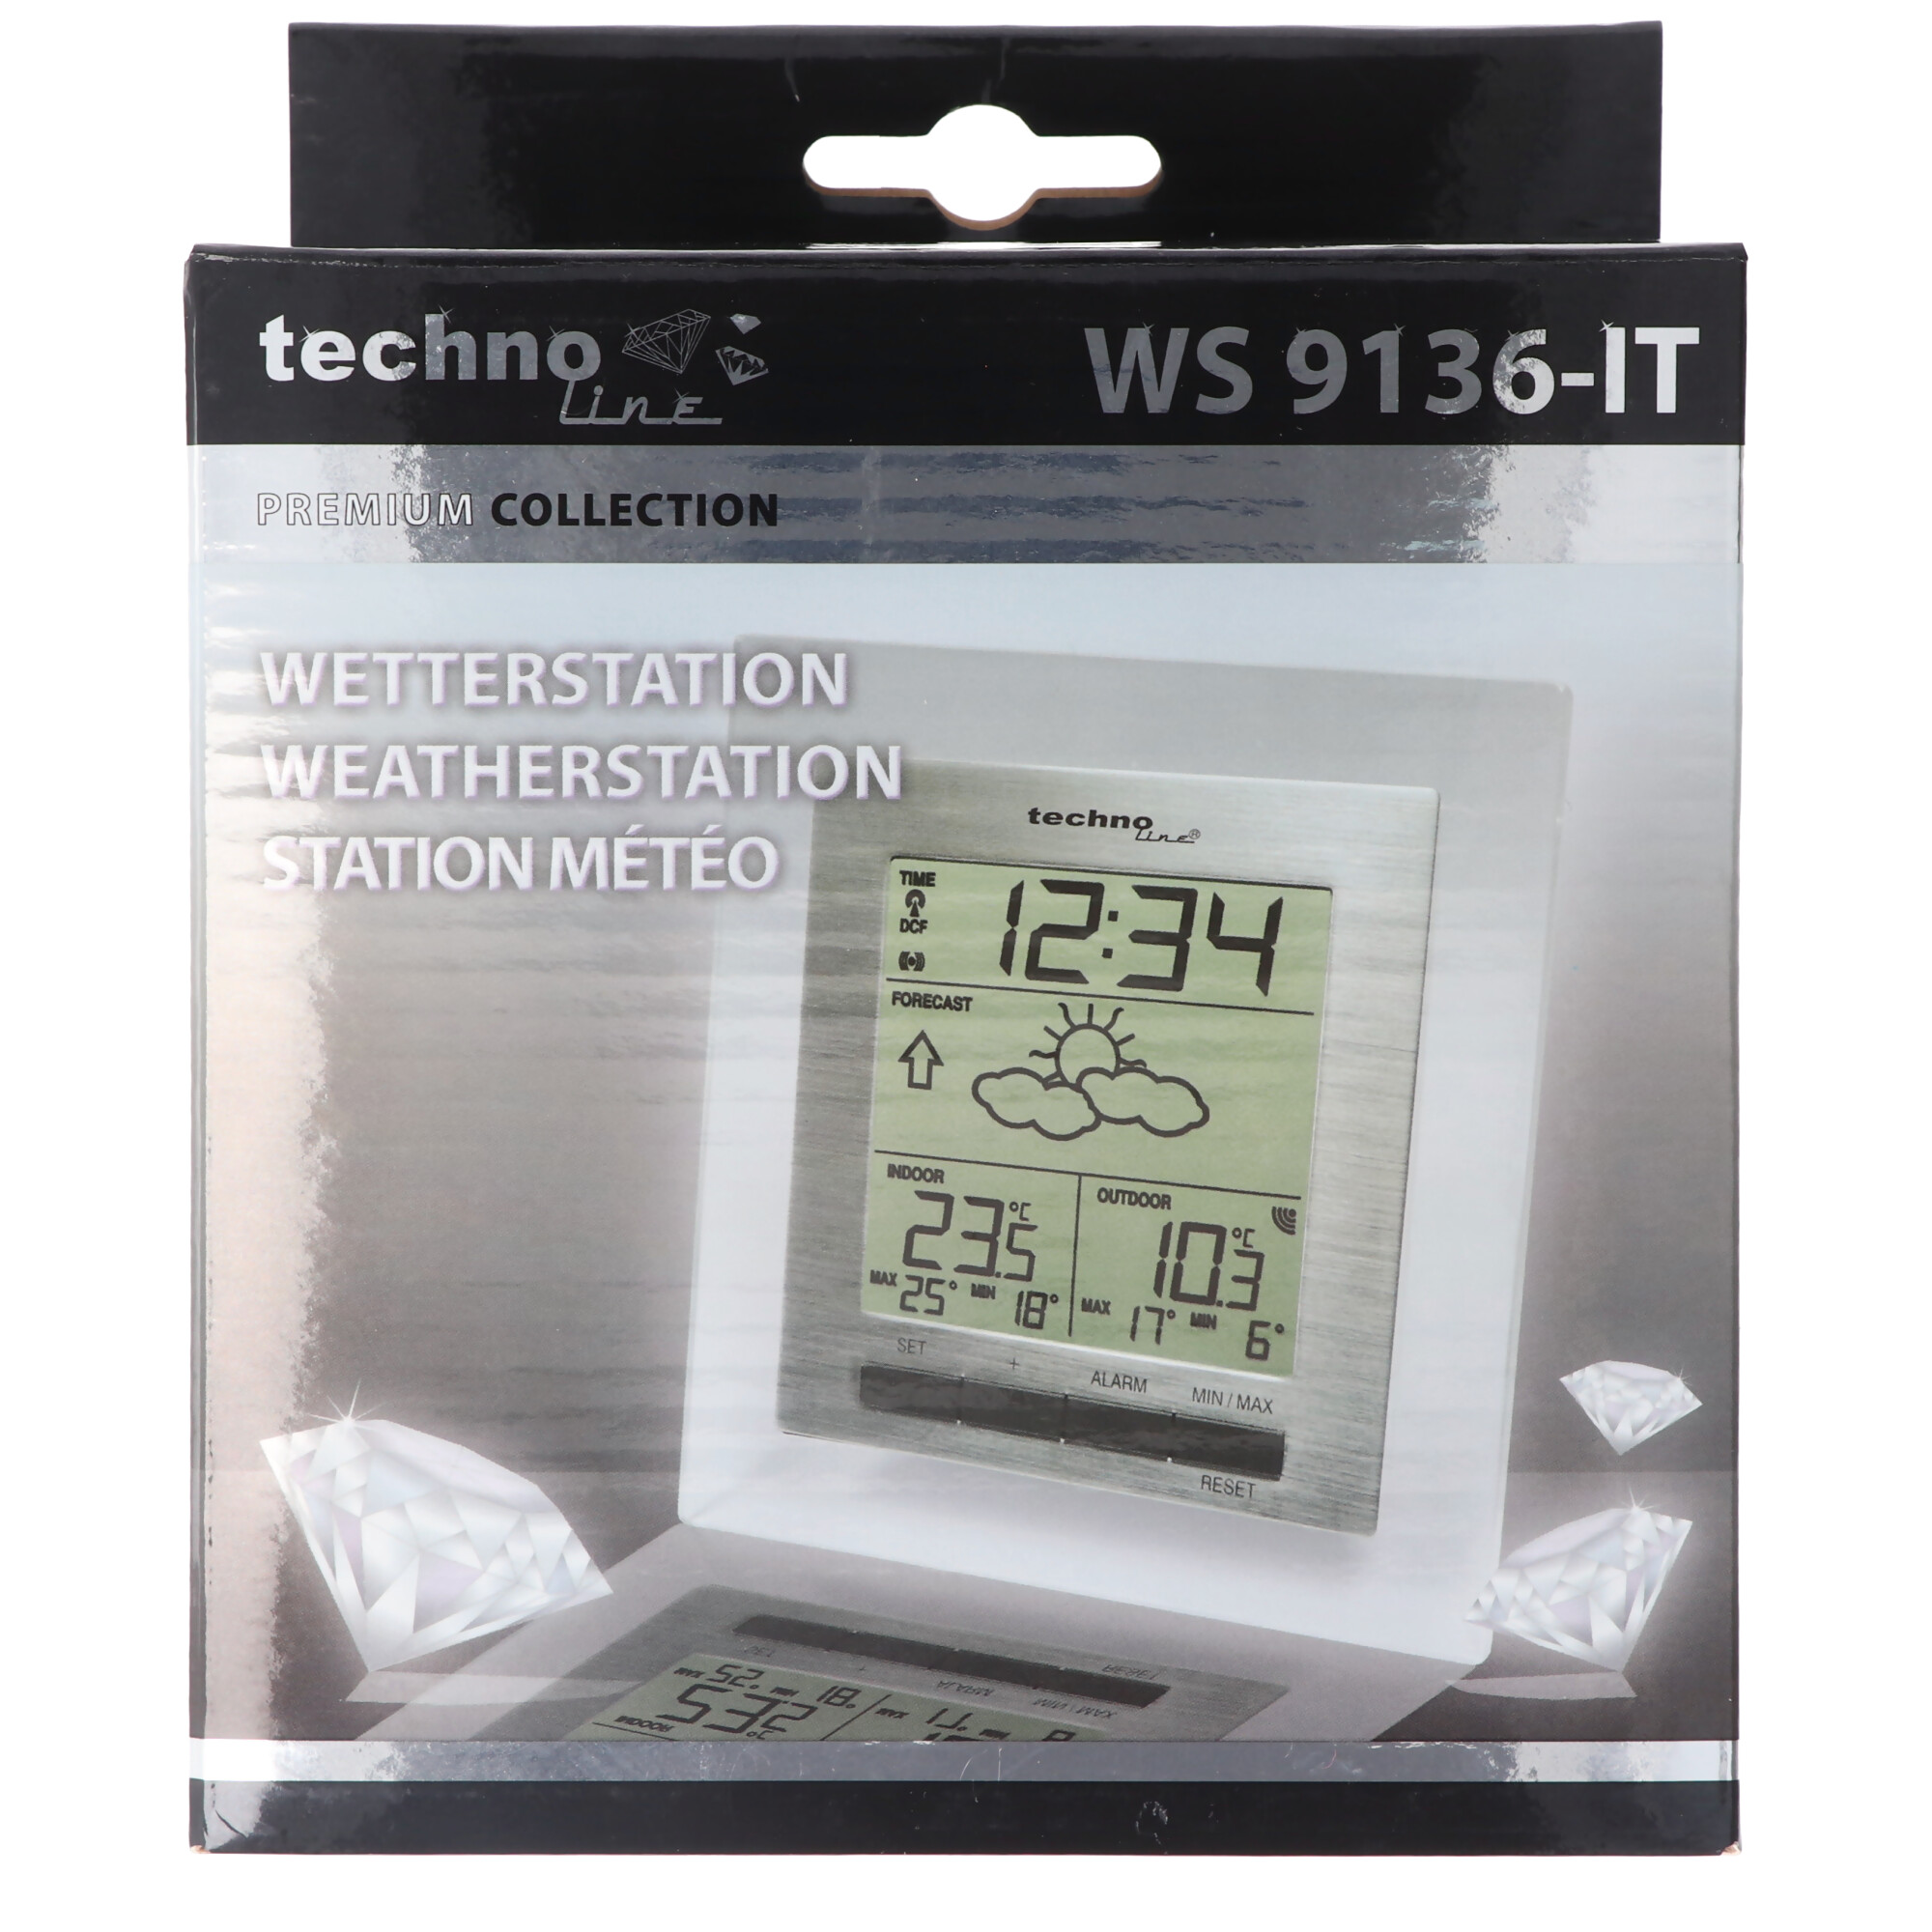 Wetterstation WS9136 mit vorhersage von Wettersituation, Tendenz und anderen Funktionen